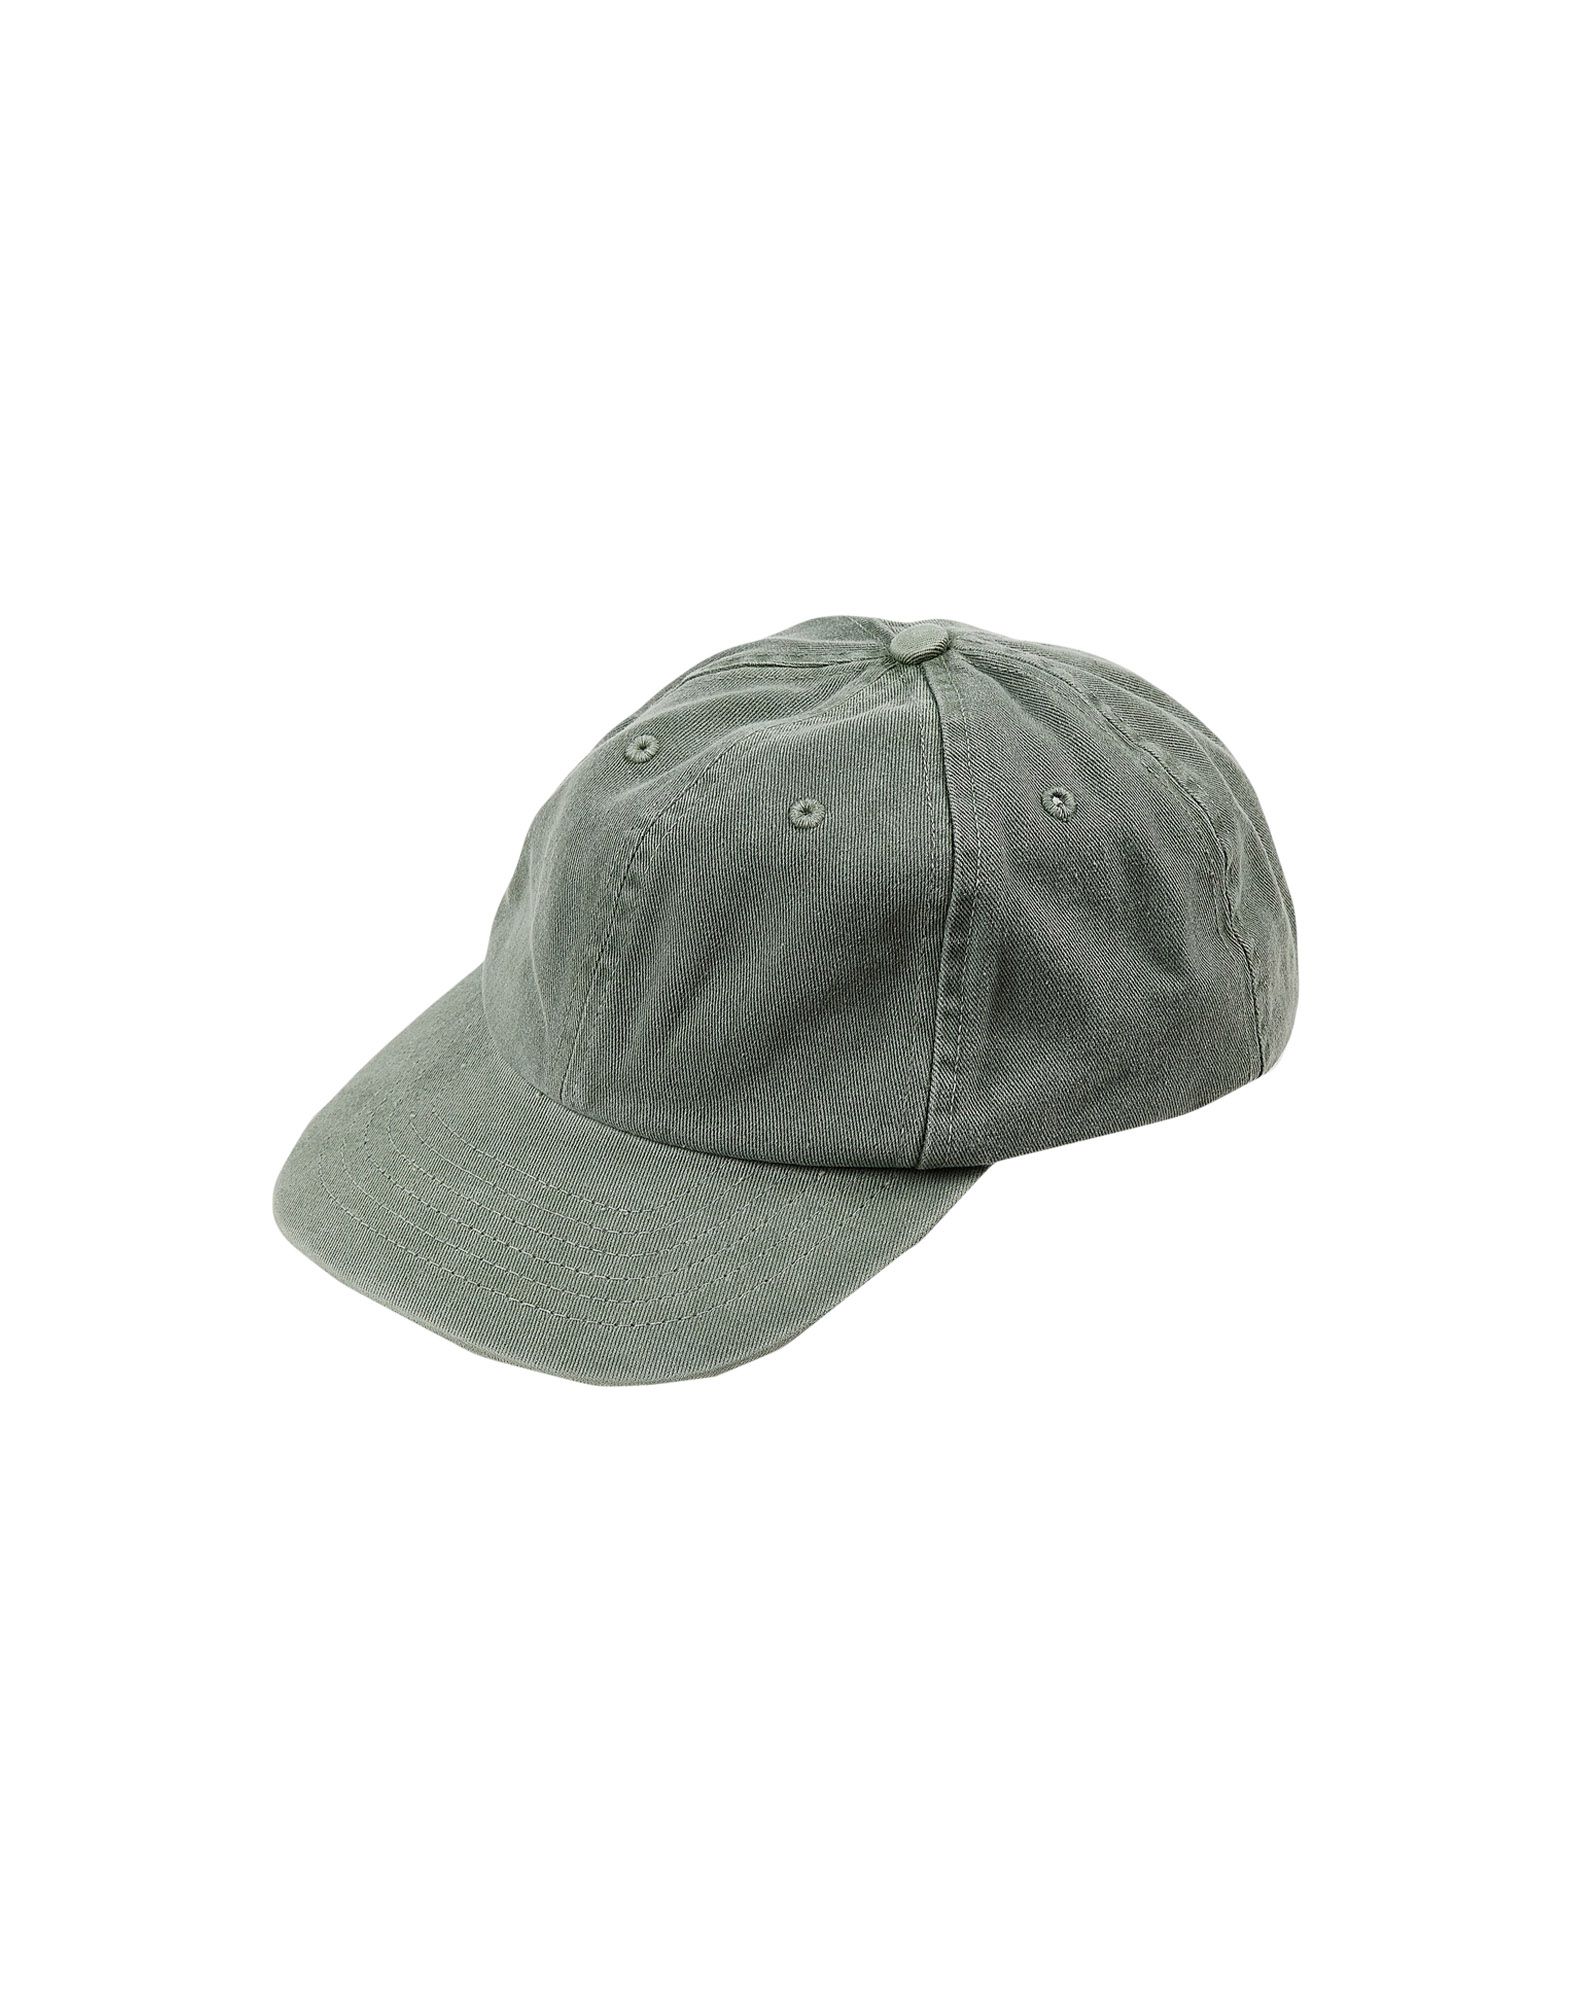 《送料無料》J.CREW メンズ 帽子 グリーン one size コットン 100%